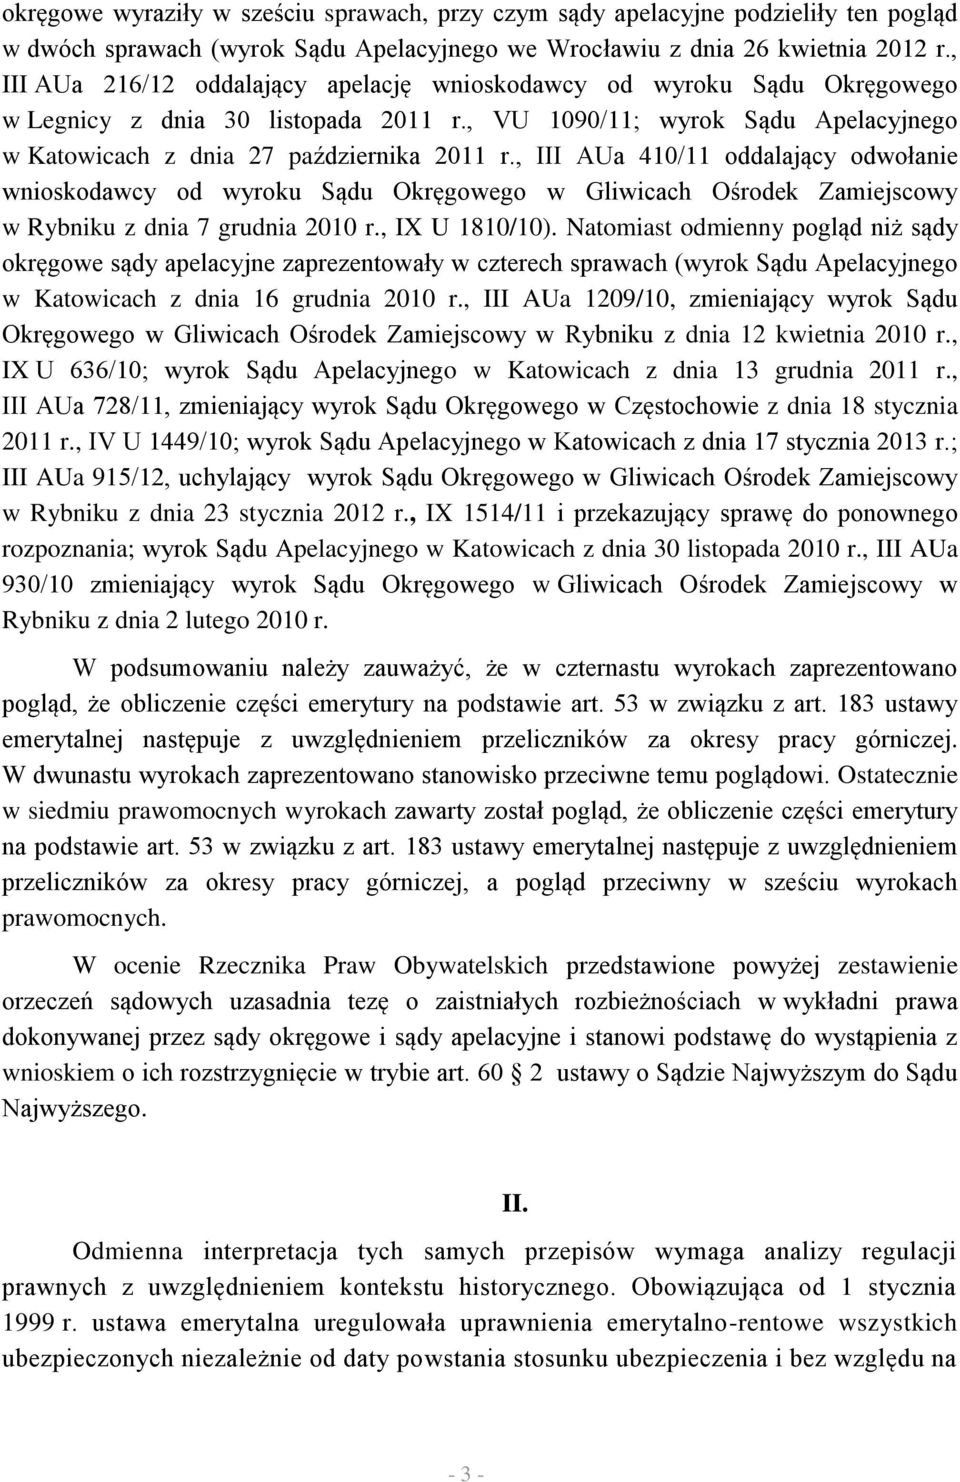 , III AUa 410/11 oddalający odwołanie wnioskodawcy od wyroku Sądu Okręgowego w Gliwicach Ośrodek Zamiejscowy w Rybniku z dnia 7 grudnia 2010 r., IX U 1810/10).